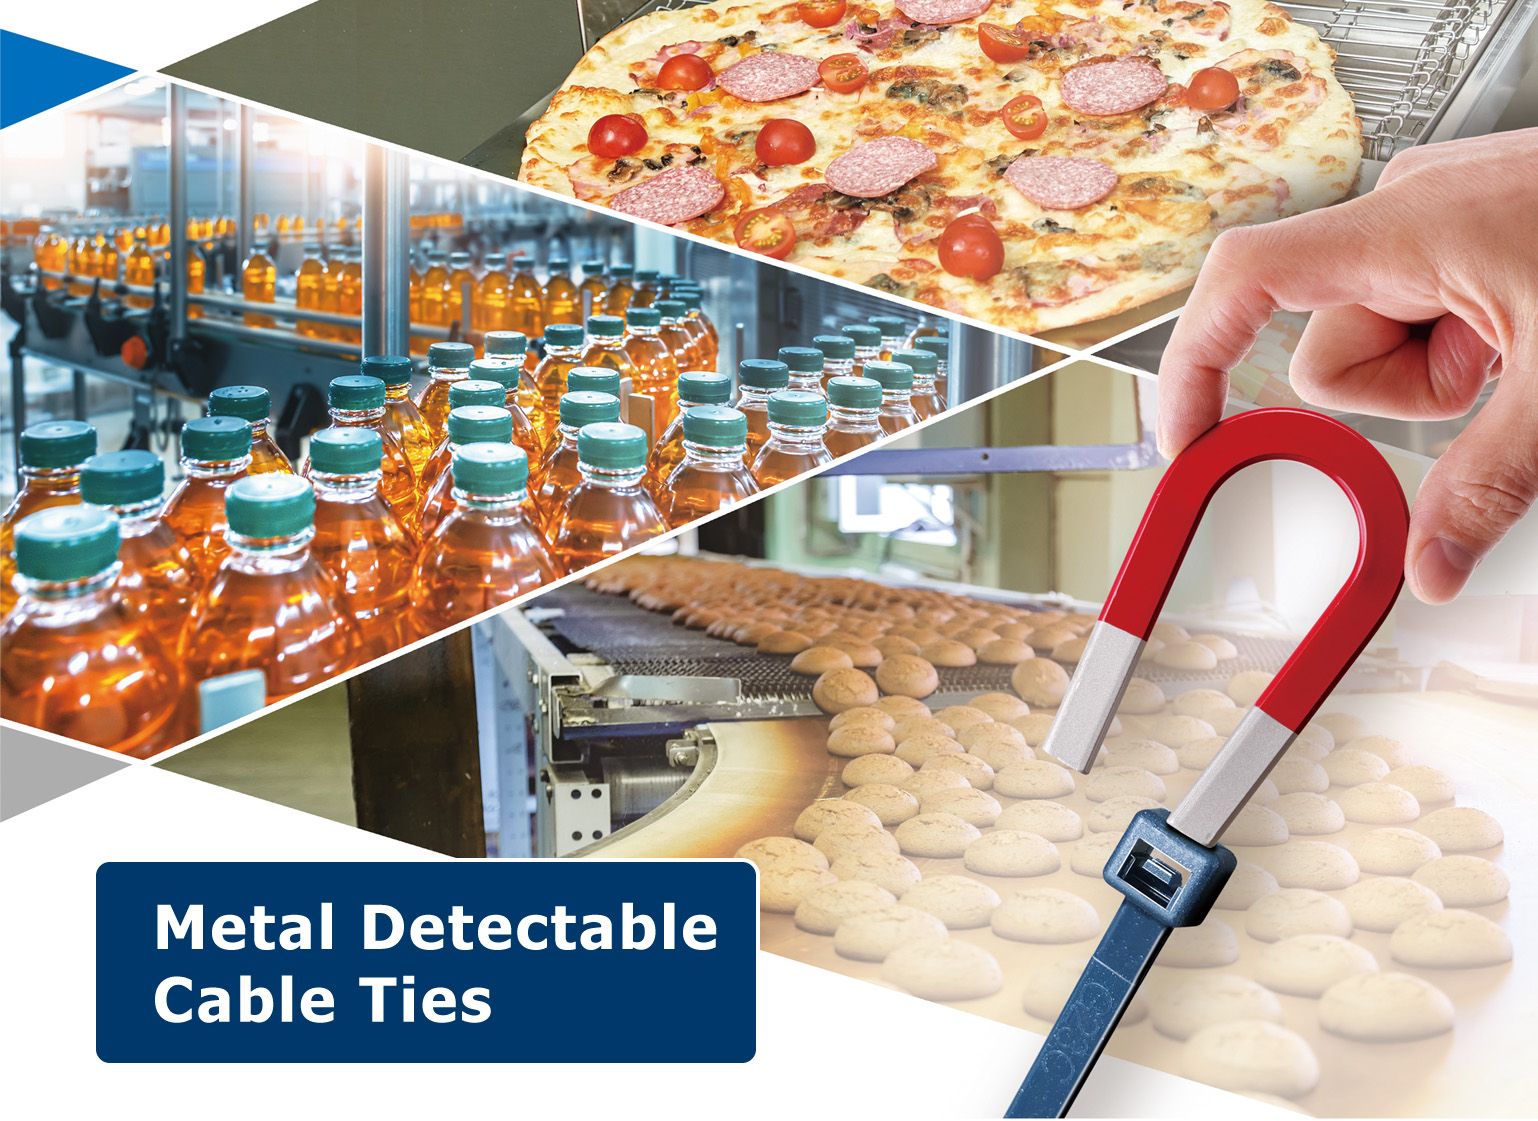 O lacre de cabo detectável por metal é ideal para as indústrias de alimentos, bebidas, farmacêutica e cosméticos